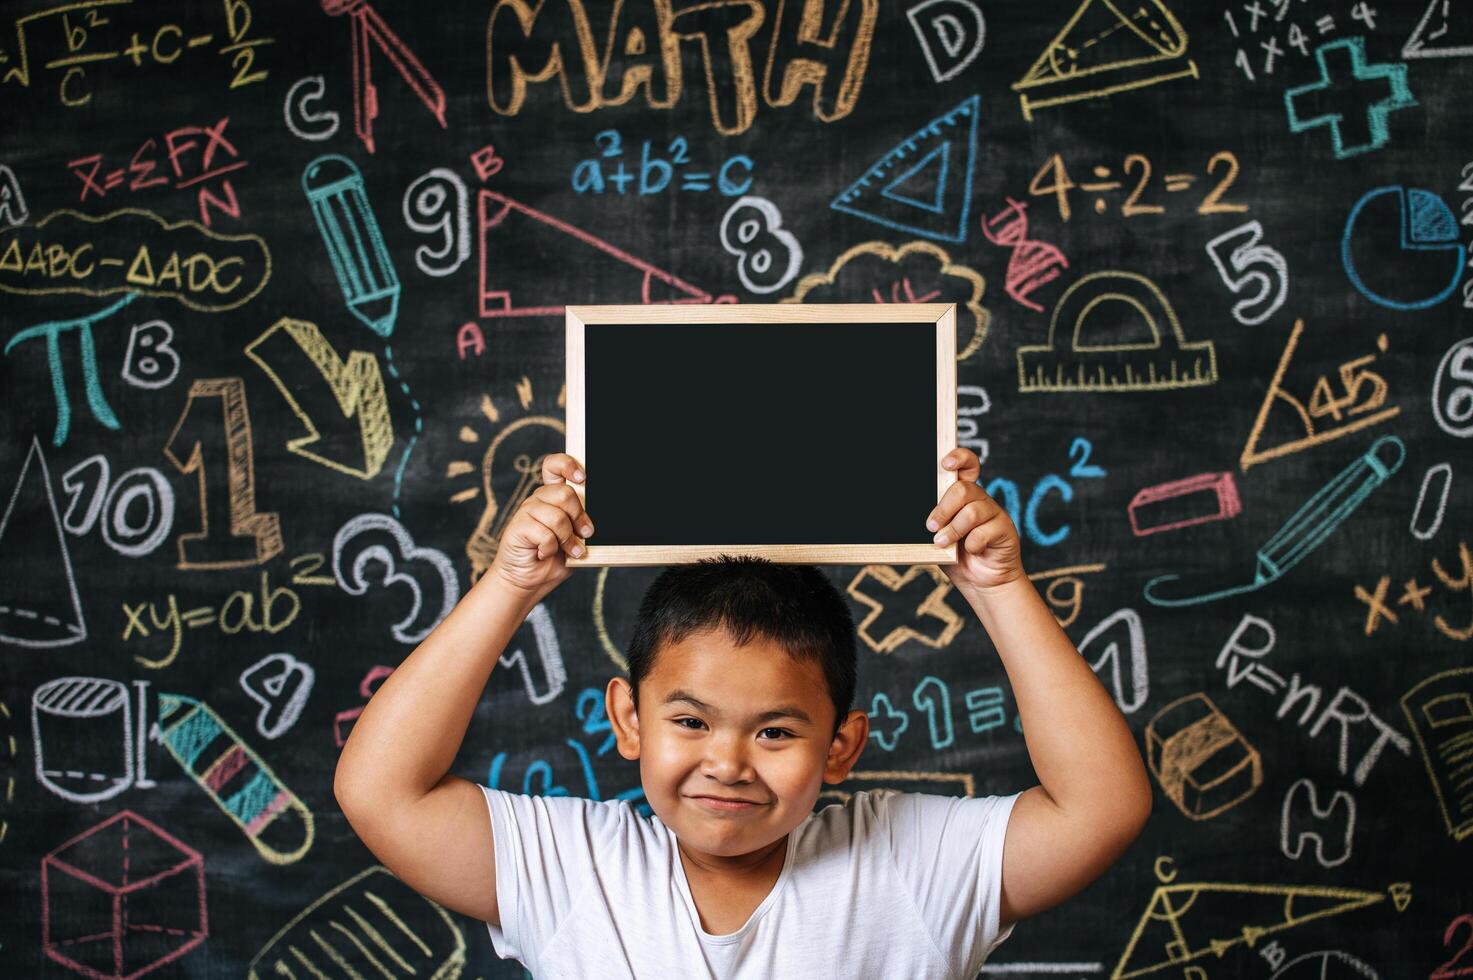 Kind steht und hält Tafel im Klassenzimmer foto